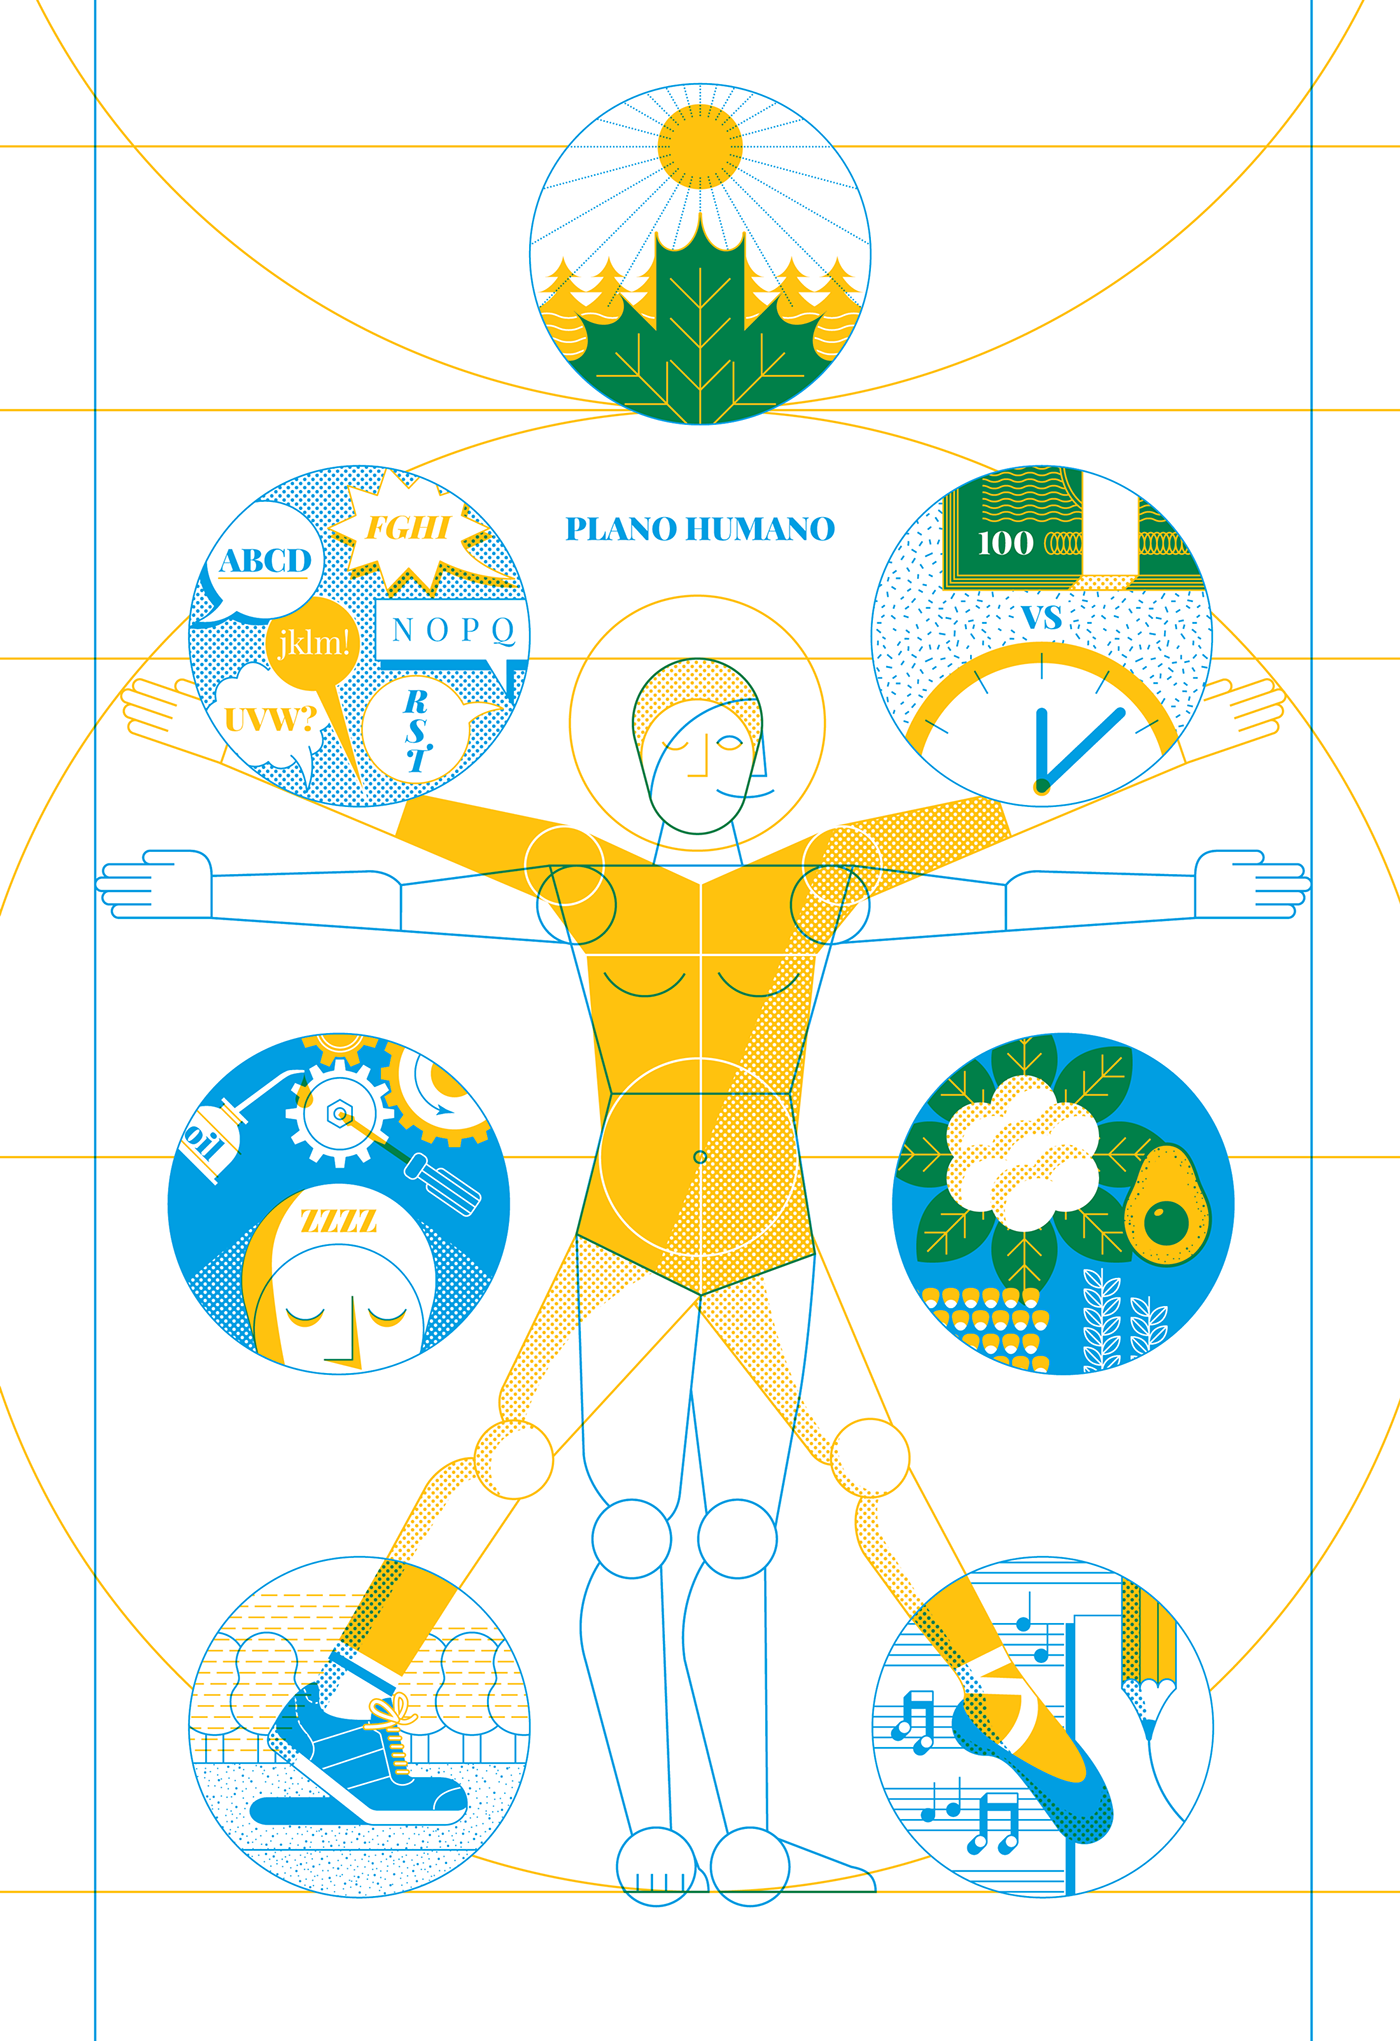 plano humano human level Anuario de Ilustradores Illustrators Yearbook risography risografia Health salud bienestar wellbeing